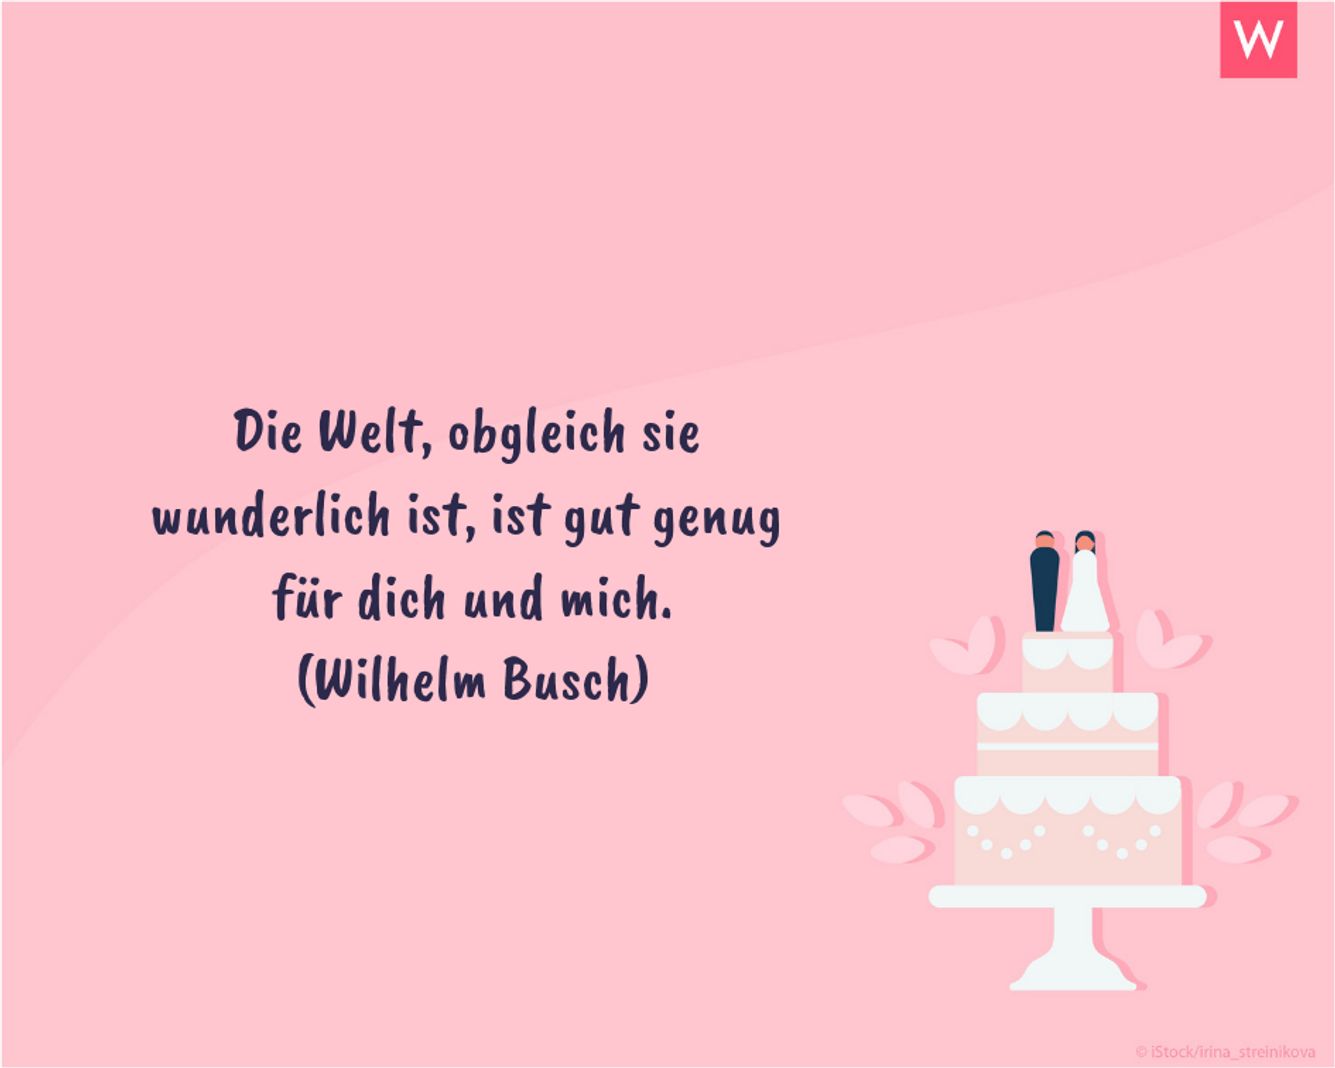 De www hochzeitssprüche Hochzeitswünsche kurz